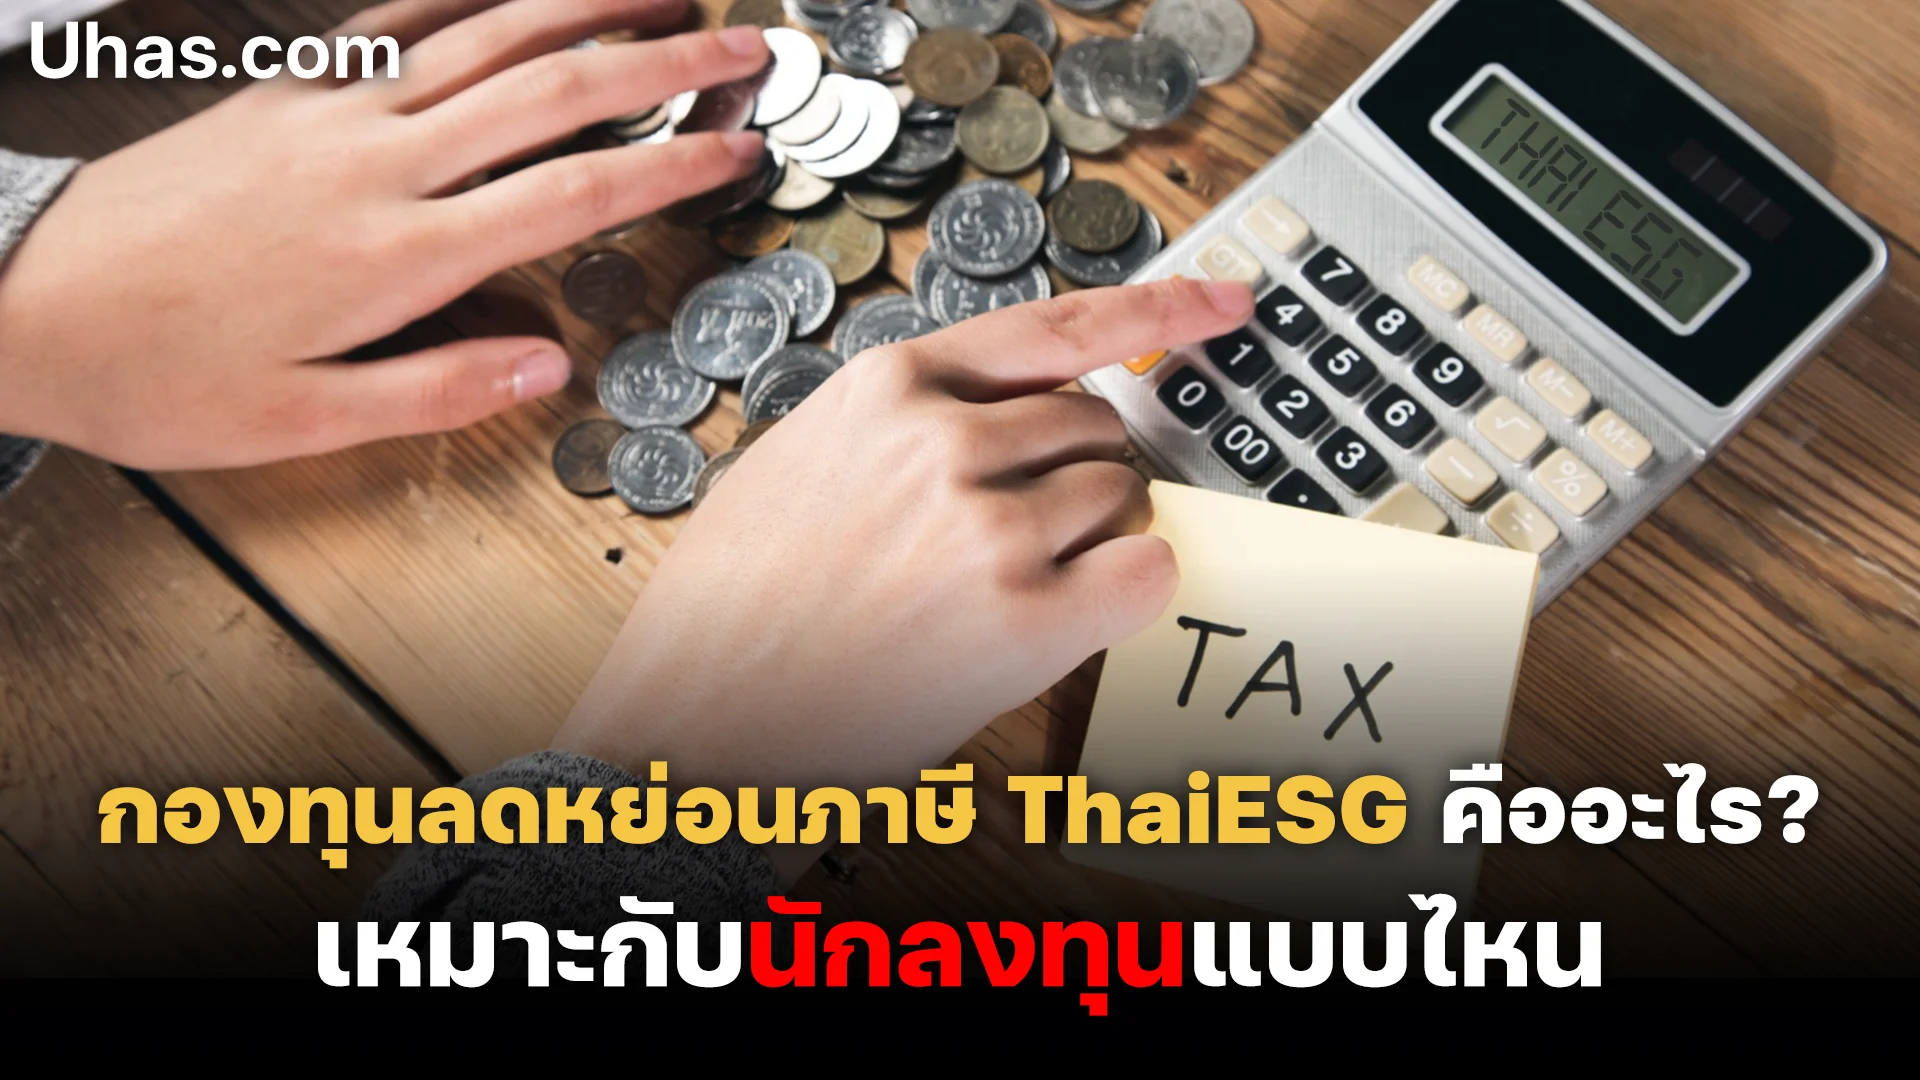 กองทุนลดหย่อนภาษี ThaiESG ทางเลือกใหม่ช่วยหนุนตลาดหุ้นไทย